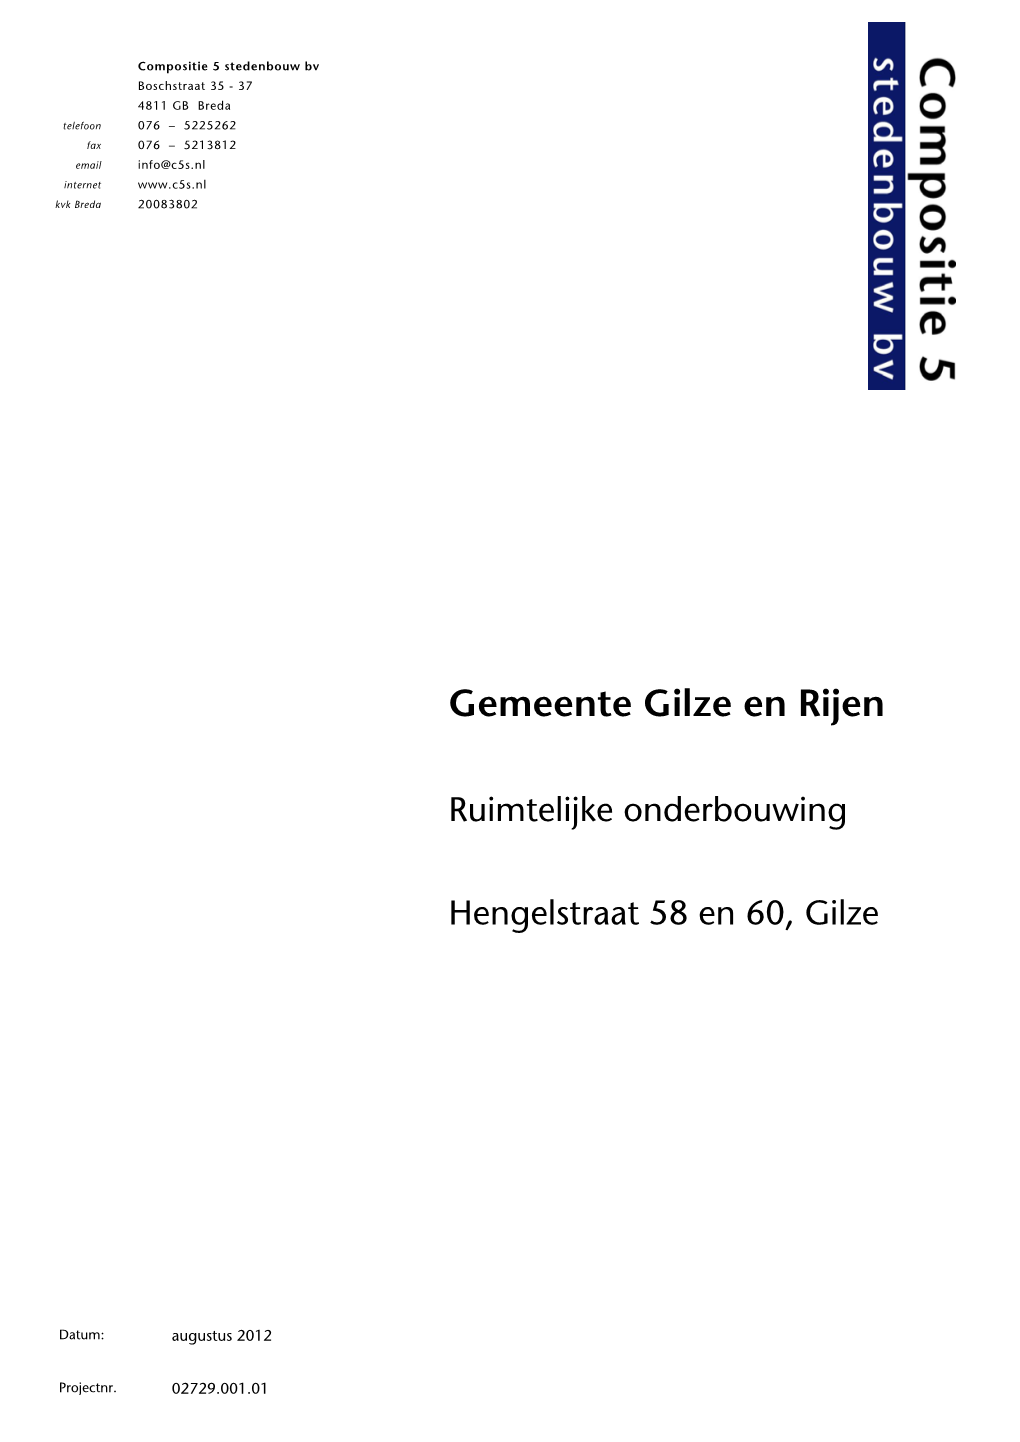 Gemeente Gilze En Rijen